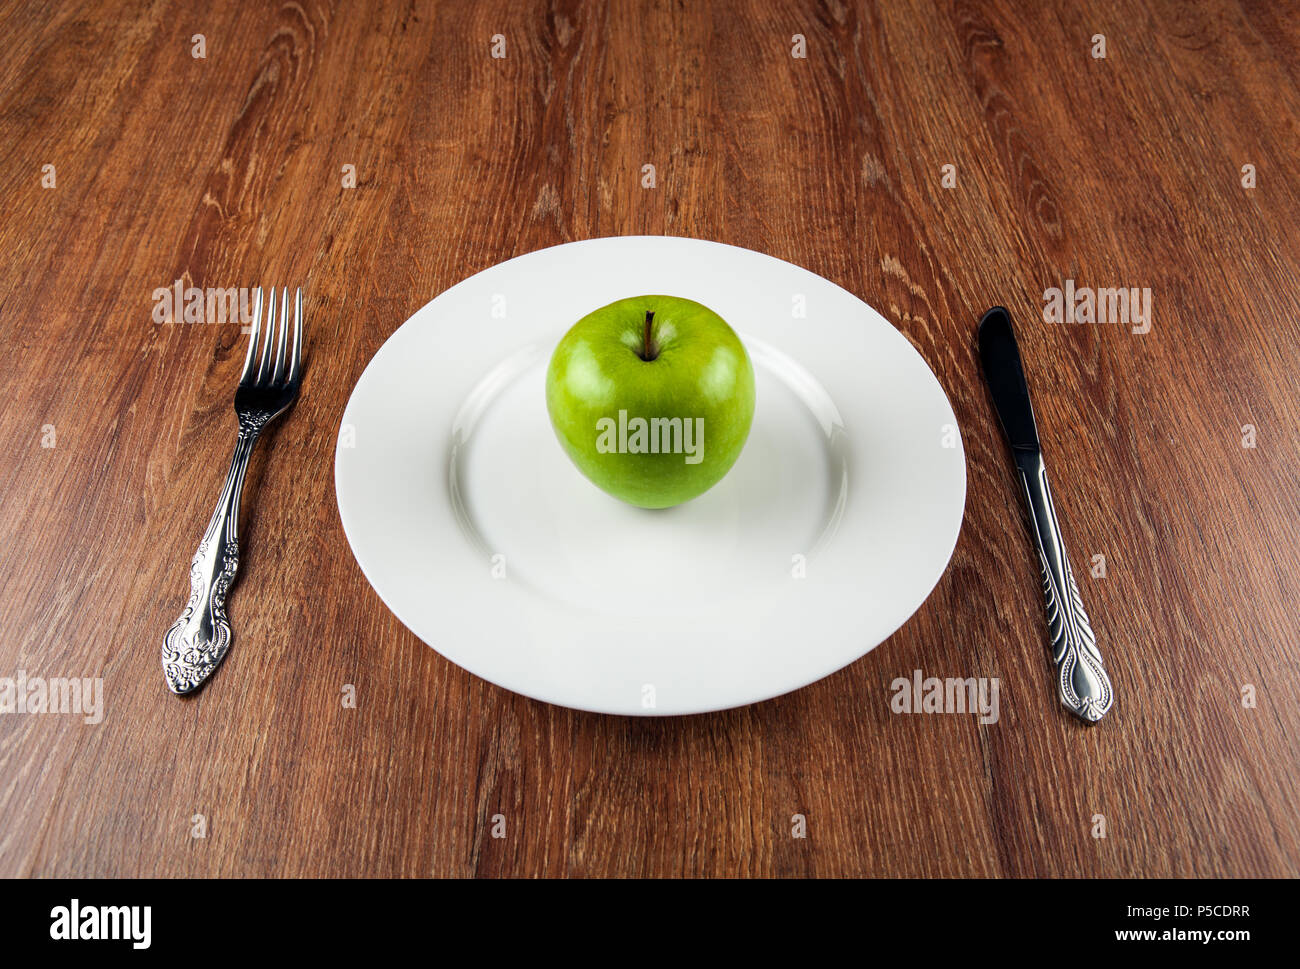 Tabella appuntamenti e la fresca mela verde su una piastra bianca close up Foto Stock